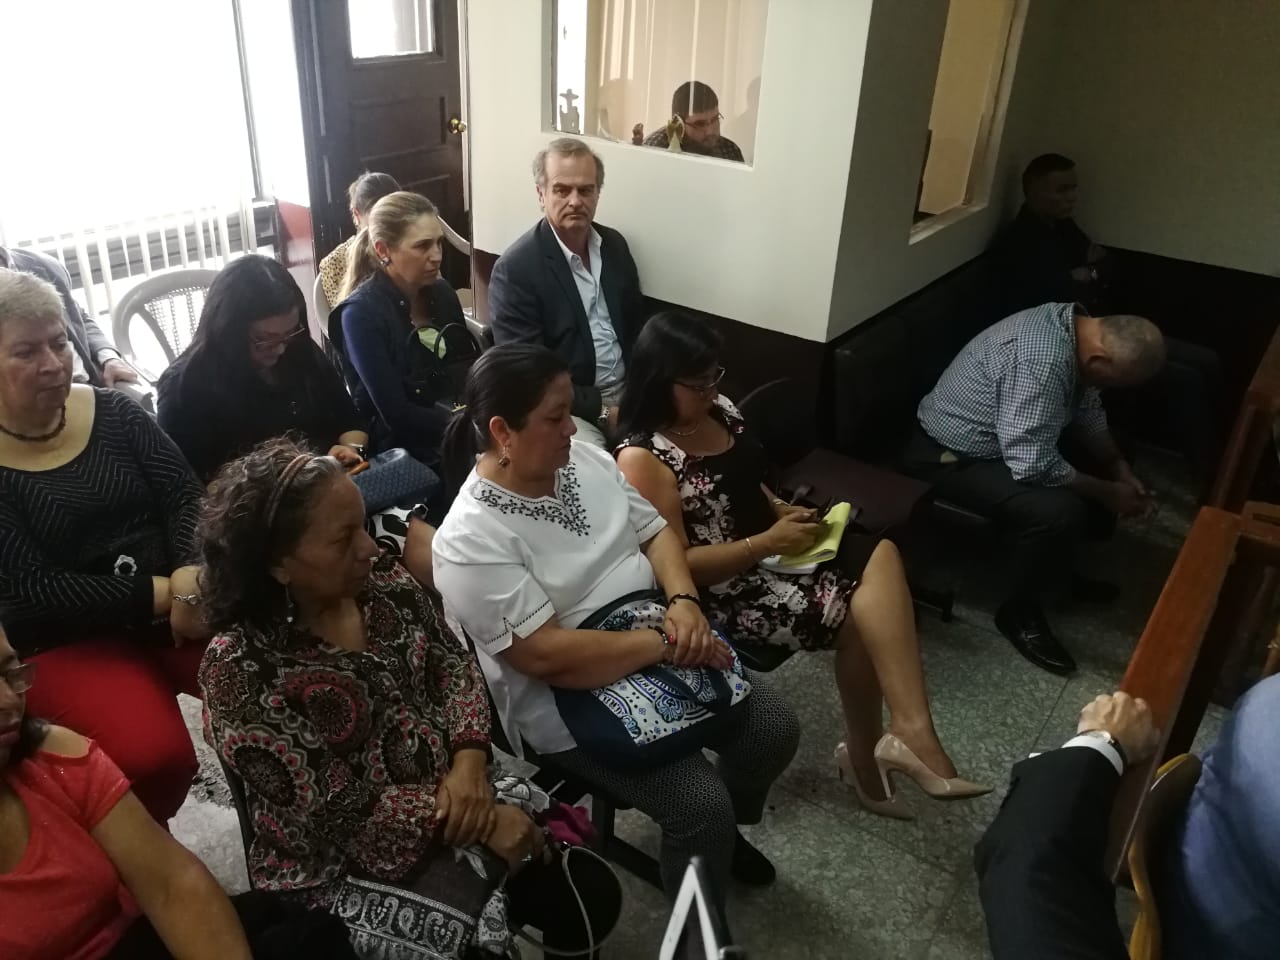 La audiencia de revisión de medidas de coerción se suspendió en el Juzgado Décimo Penal. (Foto Prensa Libre: Érick Ávila)